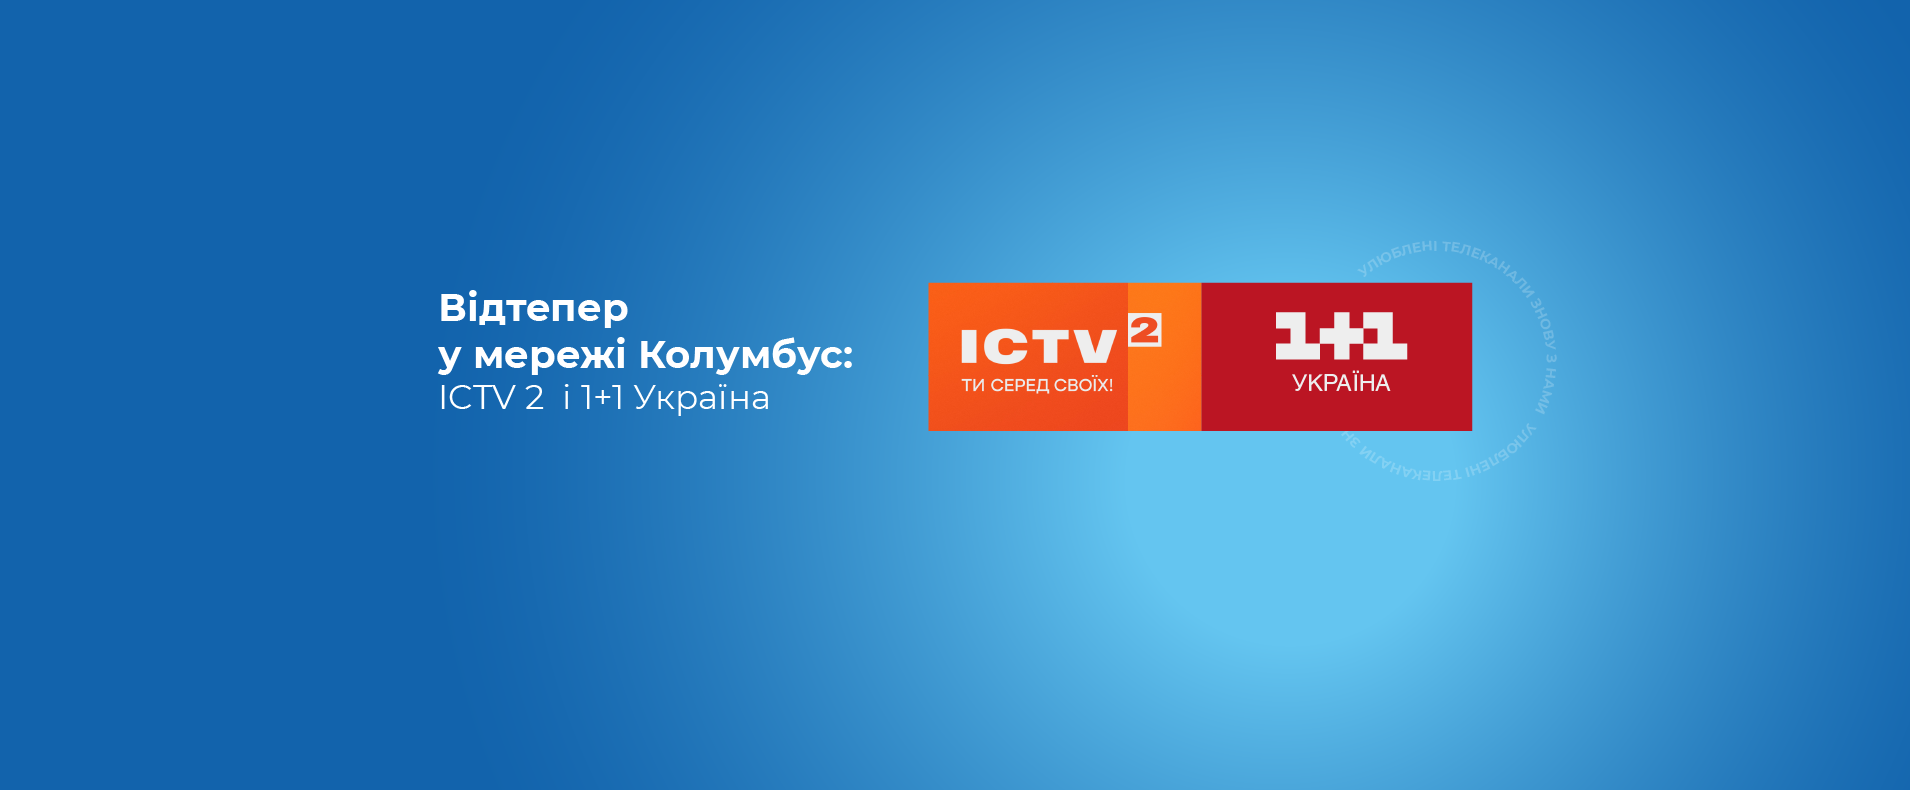 ICTV2 і 1+1 Україна вже в мережі Колумбус!